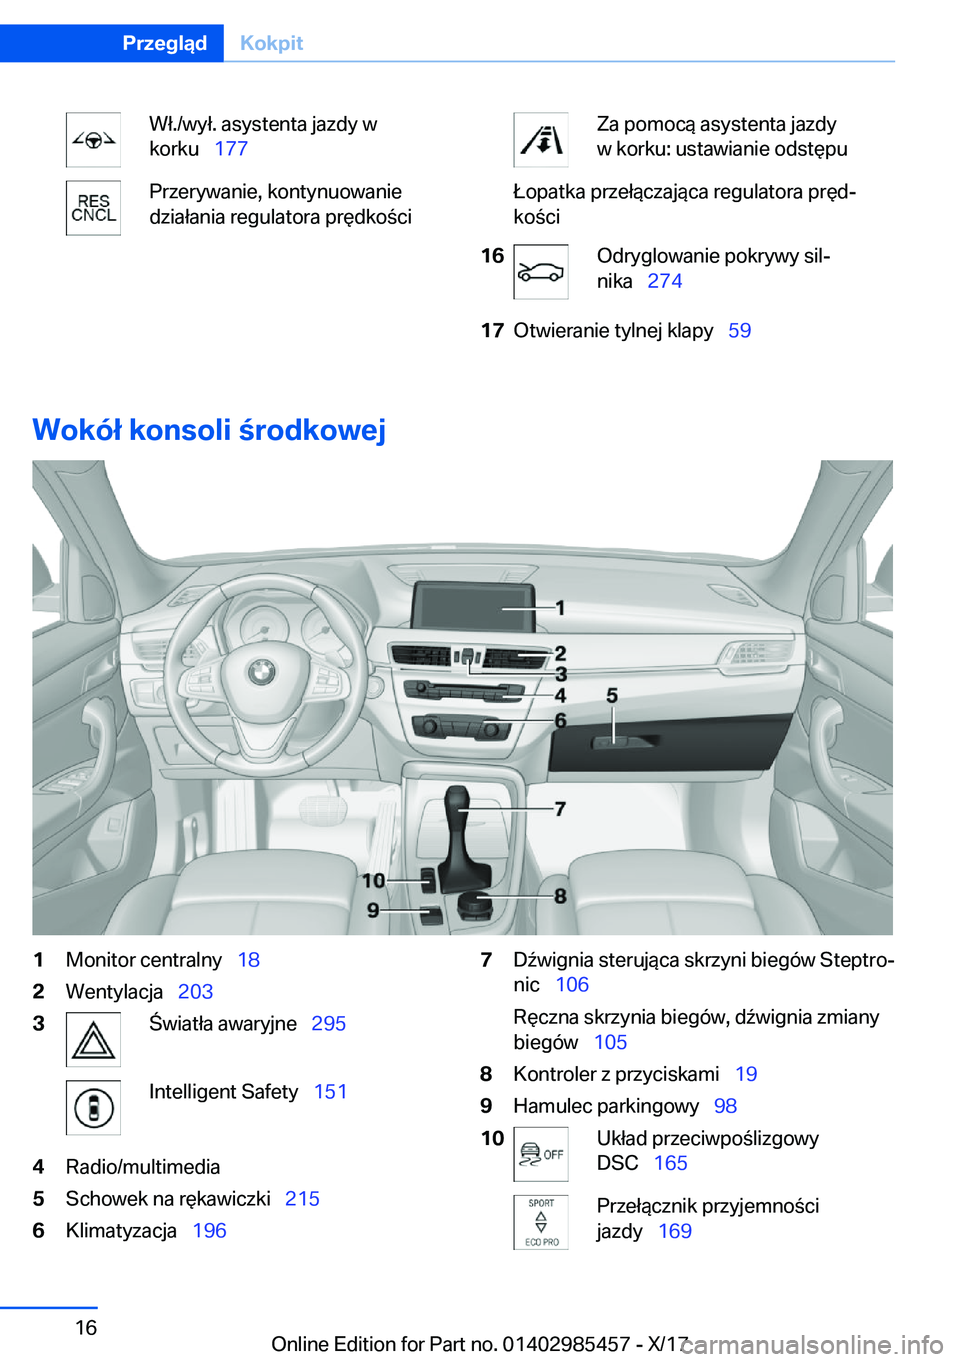 BMW X1 2018  Instrukcja obsługi (in Polish) �W�ł�.�/�w�y�ł�.� �a�s�y�s�t�e�n�t�a� �j�a�z�d�y� �w
�k�o�r�k�u\_ �1�7�7�P�r�z�e�r�y�w�a�n�i�e�,� �k�o�n�t�y�n�u�o�w�a�n�i�e
�d�z�i�a�ł�a�n�i�a� �r�e�g�u�l�a�t�o�r�a� �p�r�